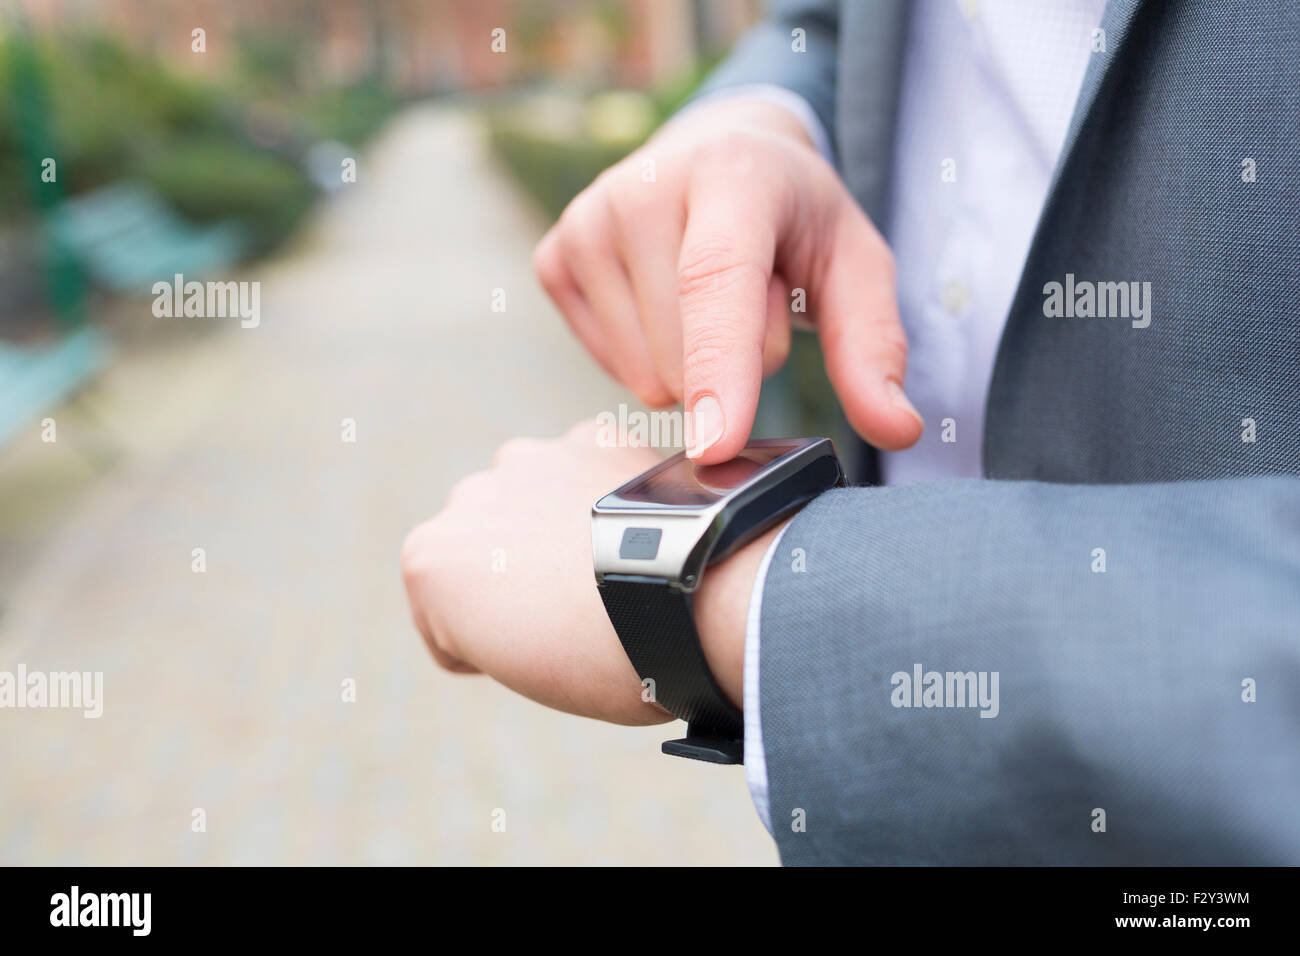 Uomo che utilizza un smartwatch. close-up le mani Foto Stock